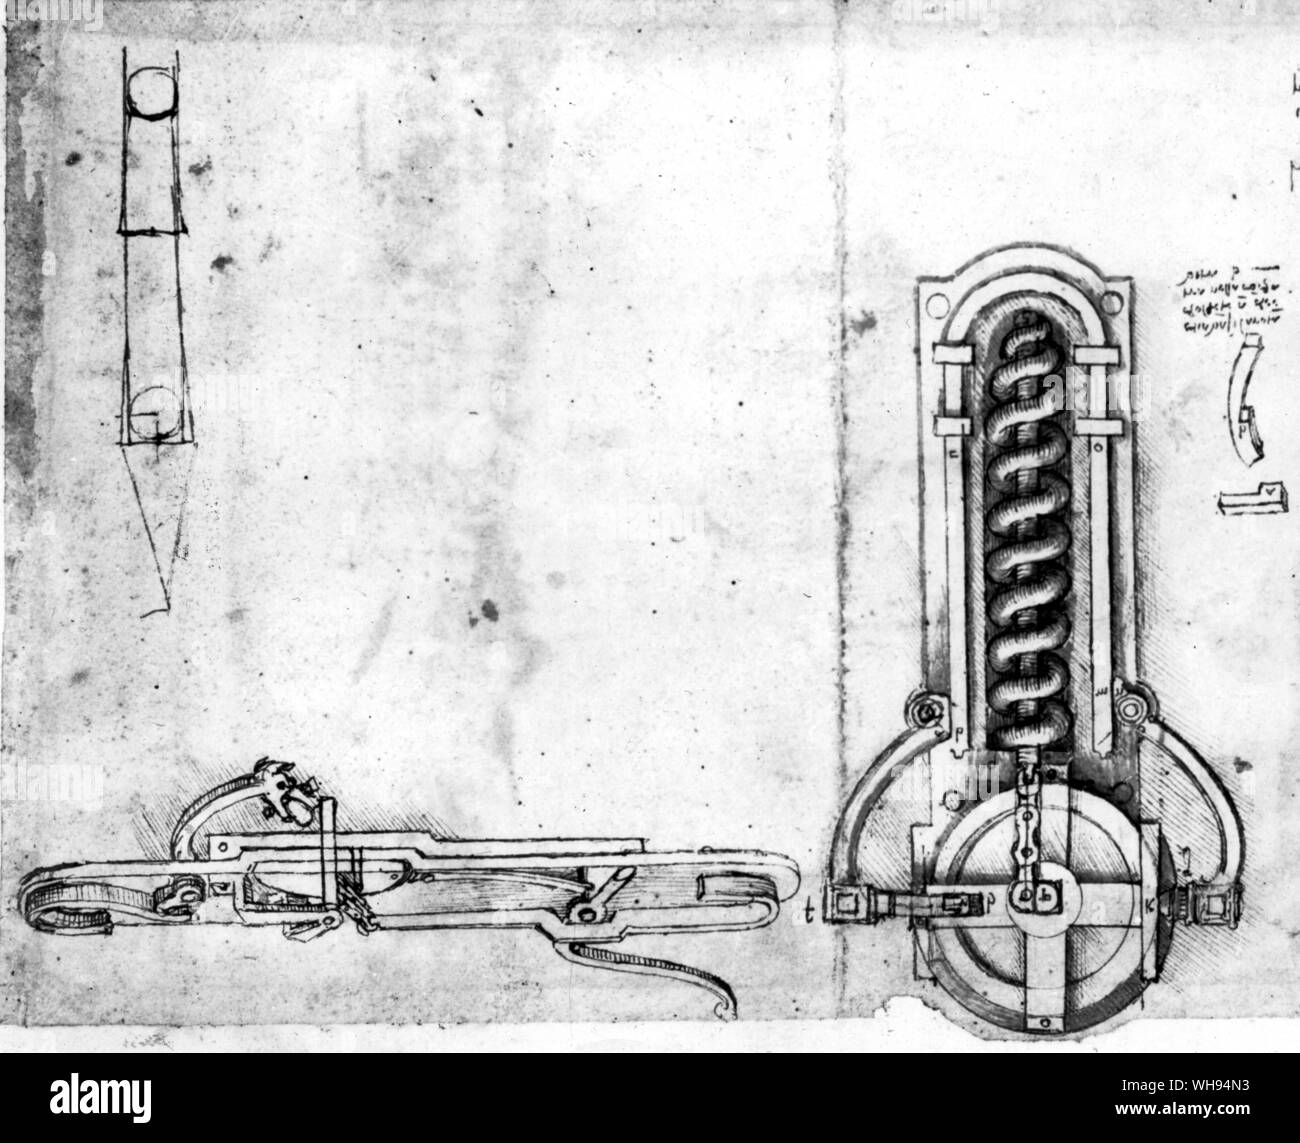 Ein Rad mit einem Schlüssel Winde eine Spiralfeder in Leonardo's Rad-Lock Mechanismus. Auf der rechten Seite ist ein feuerstein-Lock Stockfoto